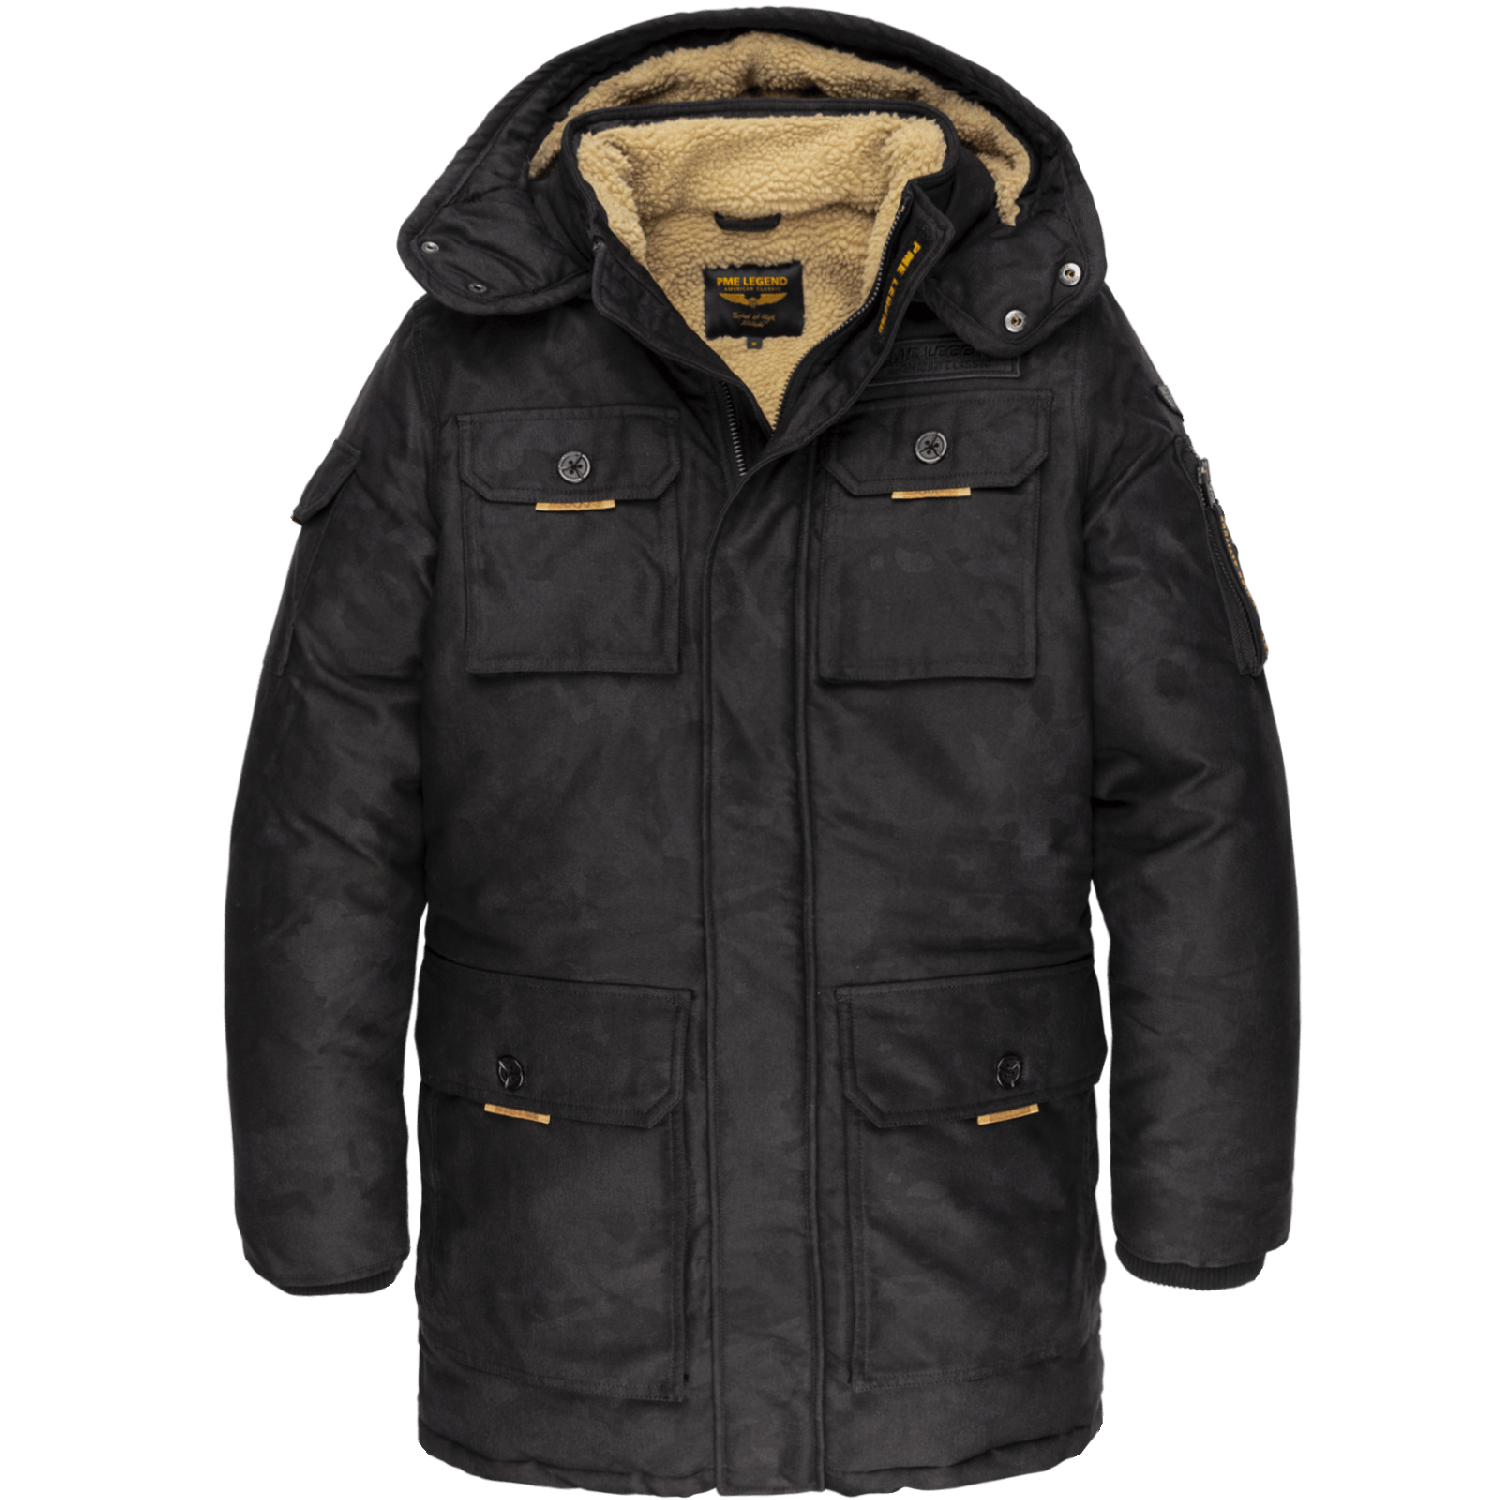 PME Legend long jacket camou pilot black